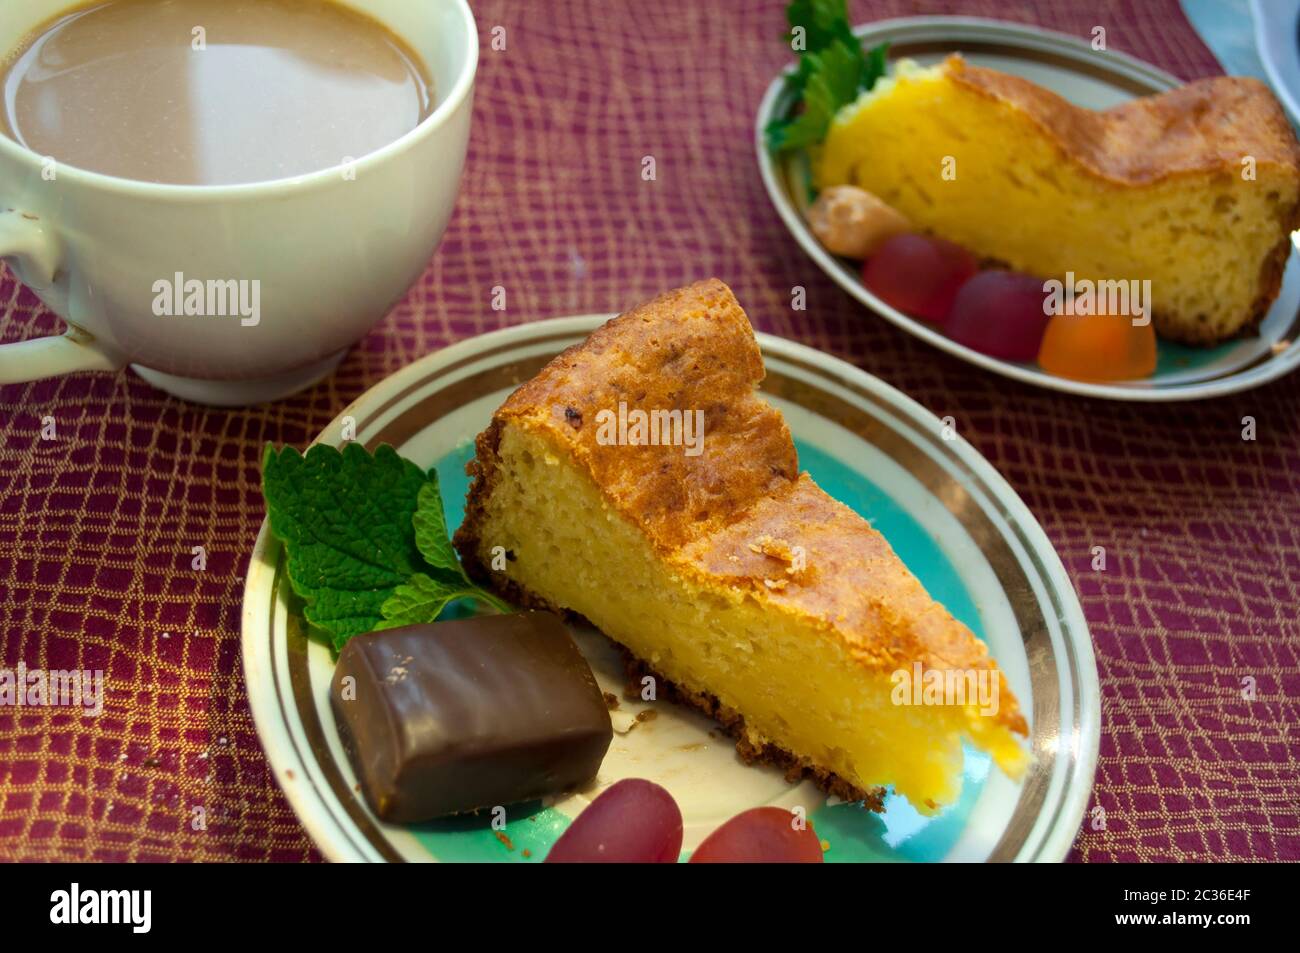 Kuchen und Kaffee mit Milch auf einer Tischdecke burgunderrot Farbe. Ein Stück Kuchen mit Gelee Bonbons und Schokolade Bondi wird auf einer Untertasse genommen Stockfoto